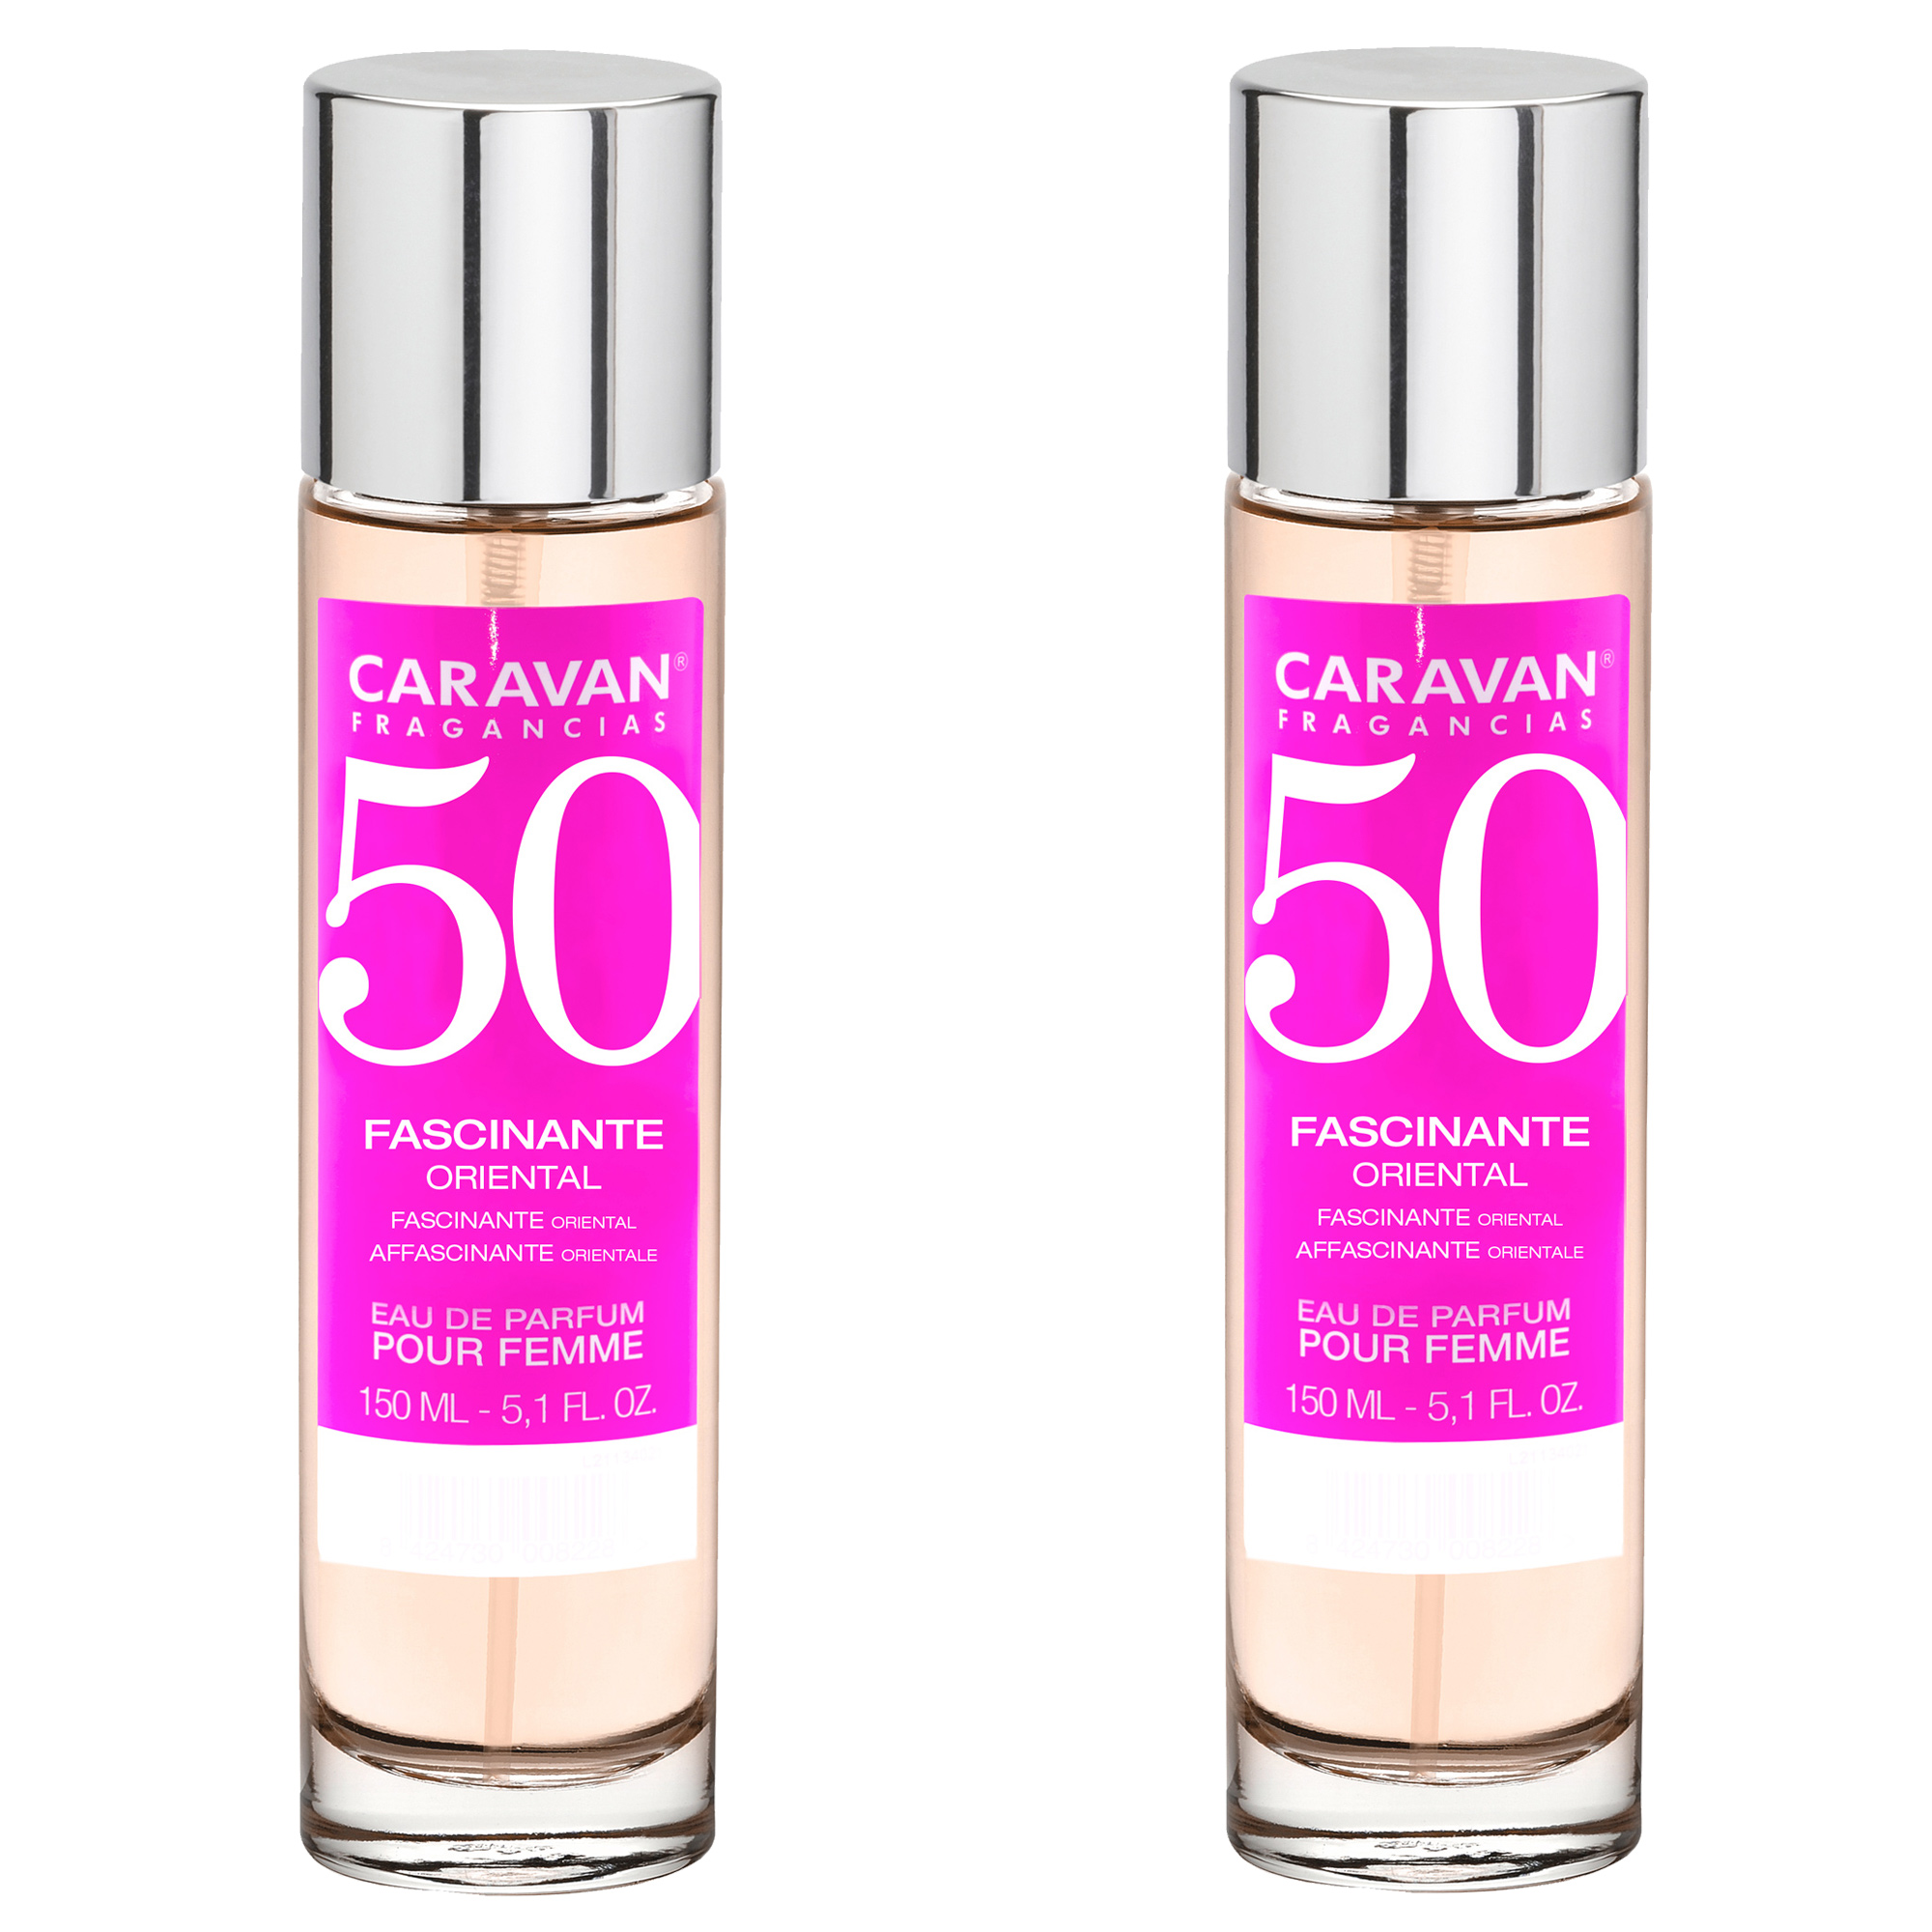 Caravan Fragancias - Set de 2 Caravan perfume de mujer nº50 - 150ml.